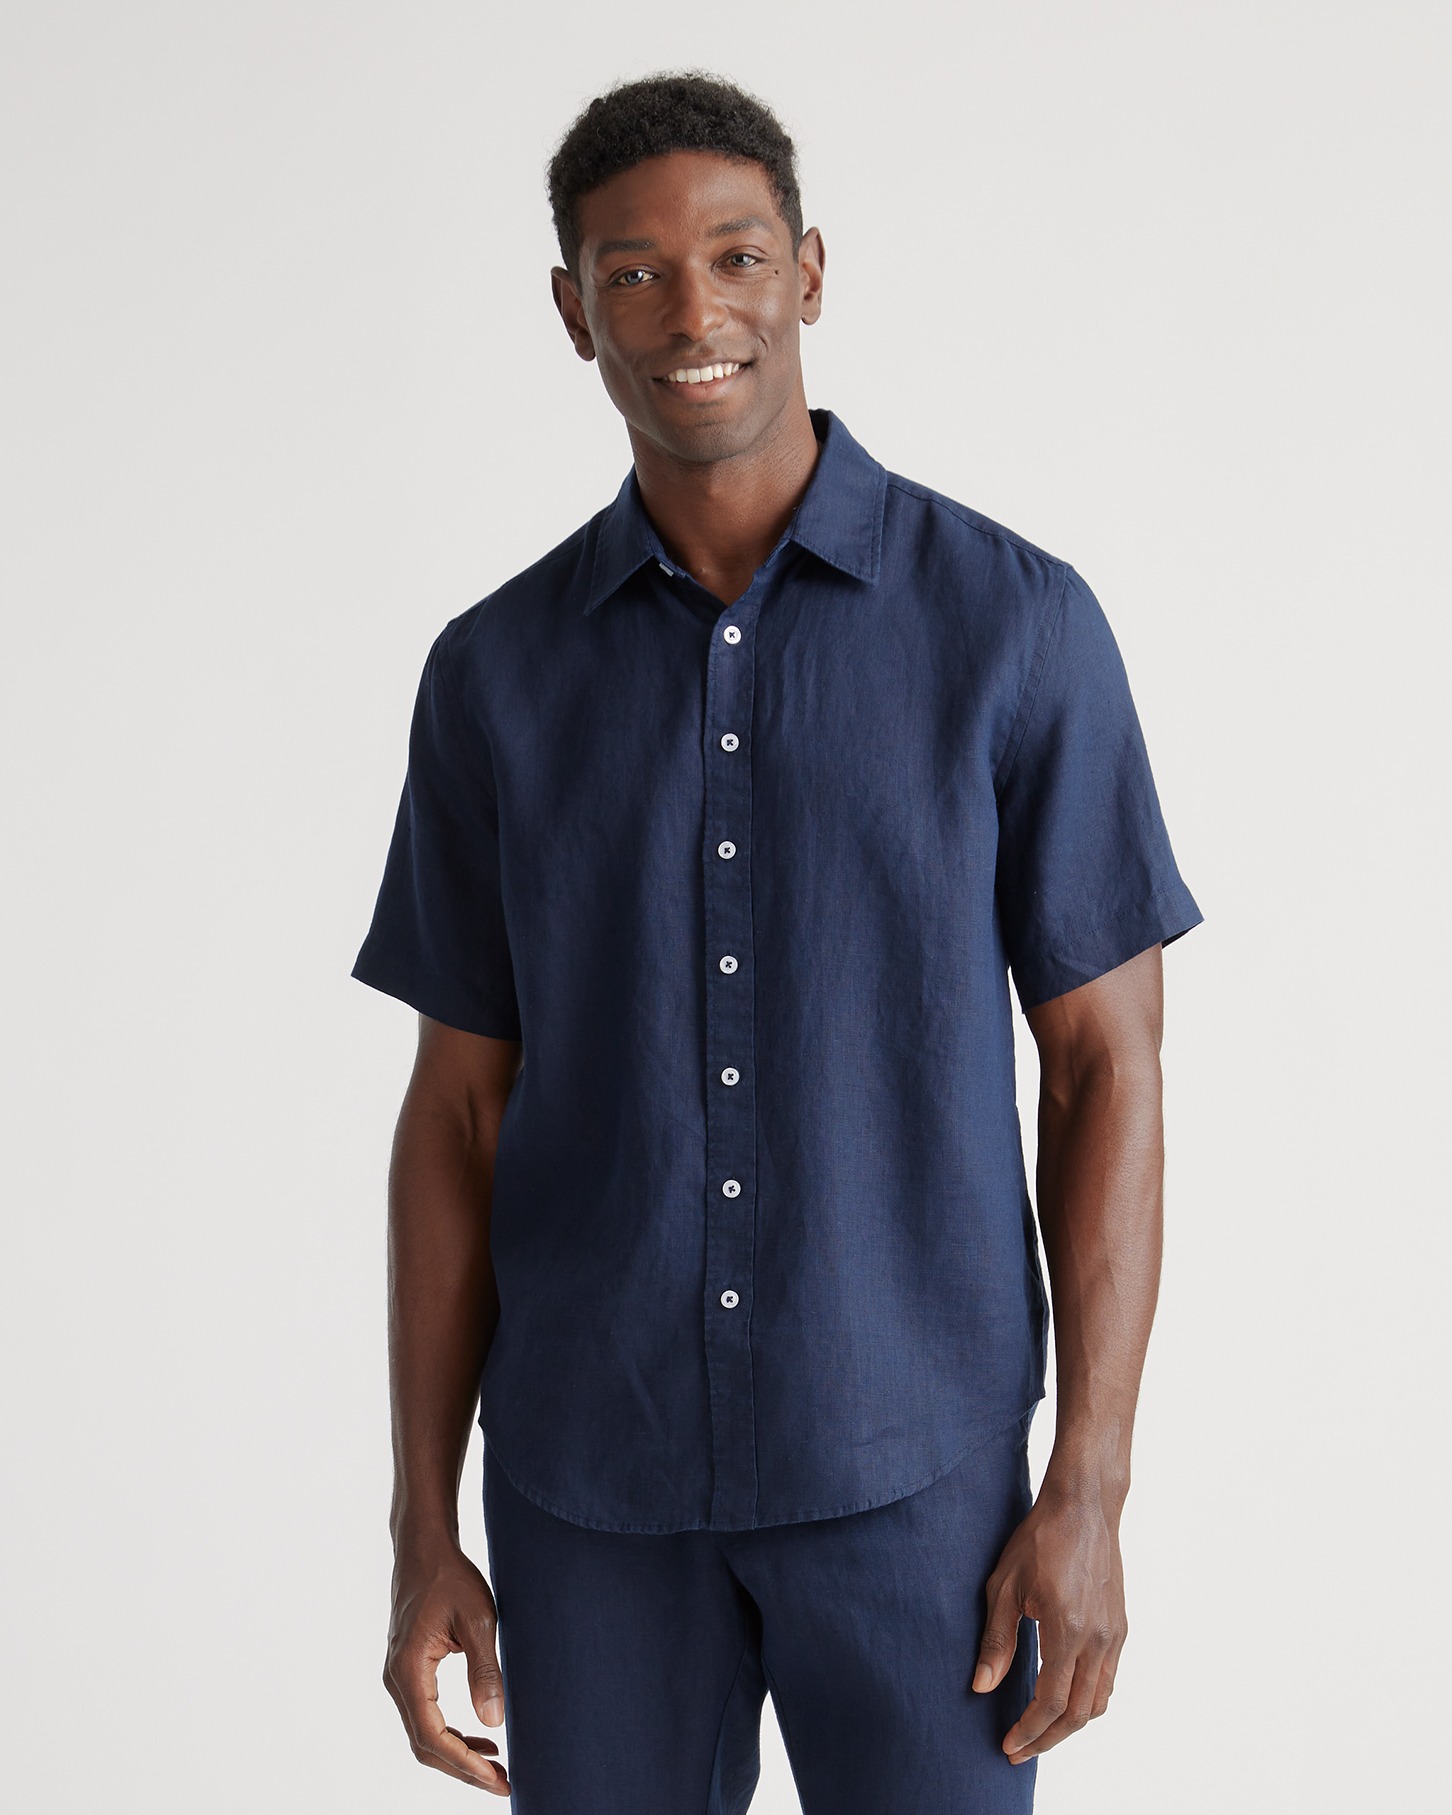 Quince Men's 100% European Linen Short Sleeve Shirt In Neutral